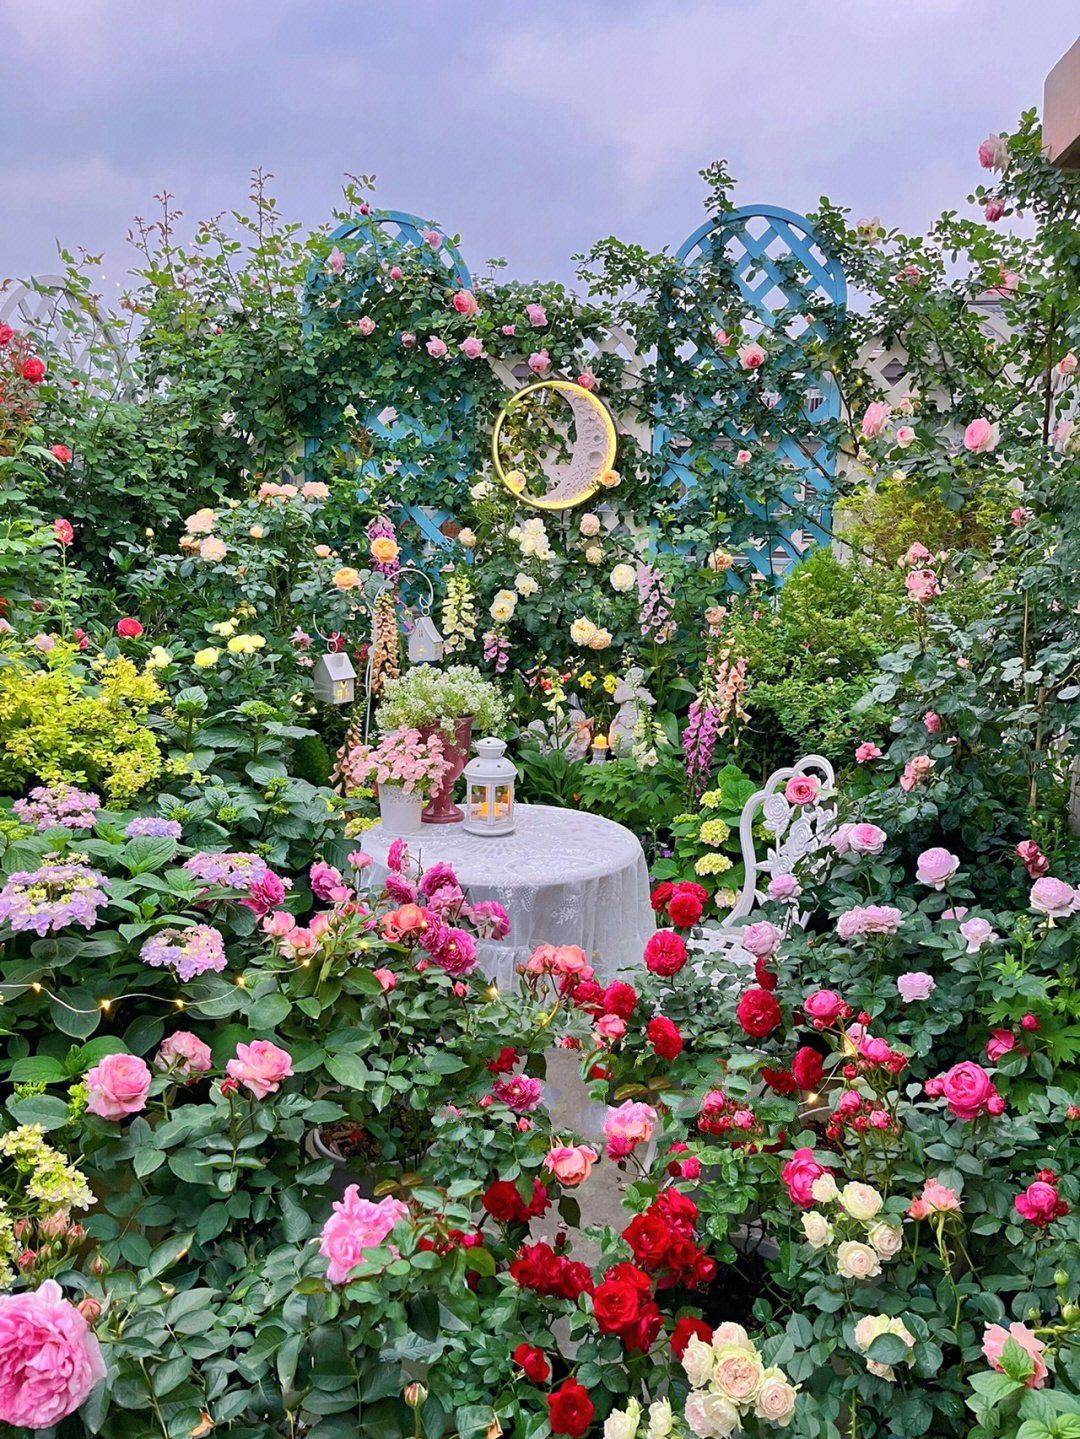 Chỉ tốn 5 tháng, sân thượng 30m² biến thành khu vườn phủ kín hoa tươi vô cùng lãng mạn - Ảnh 9.